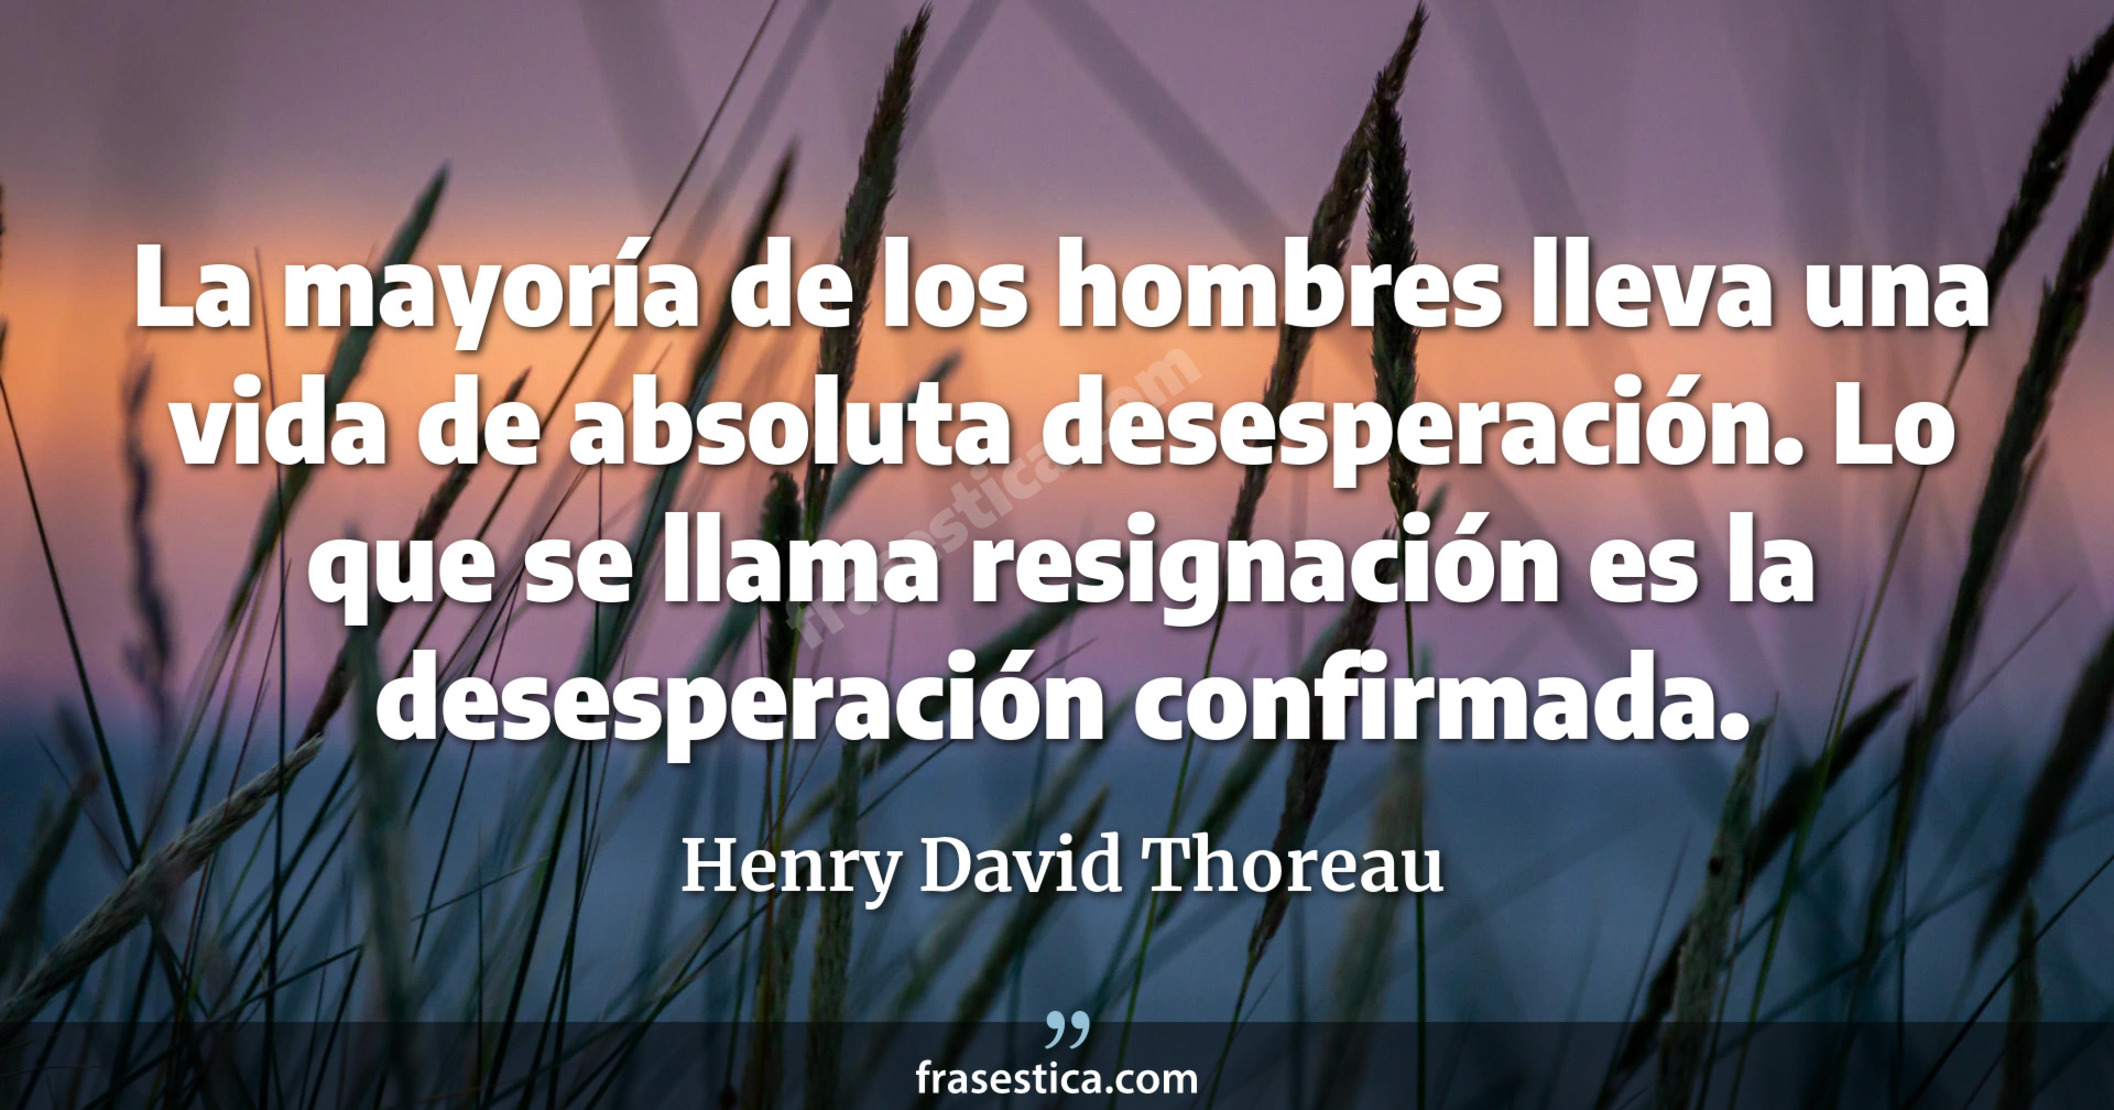 La mayoría de los hombres lleva una vida de absoluta desesperación. Lo que se llama resignación es la desesperación confirmada. - Henry David Thoreau